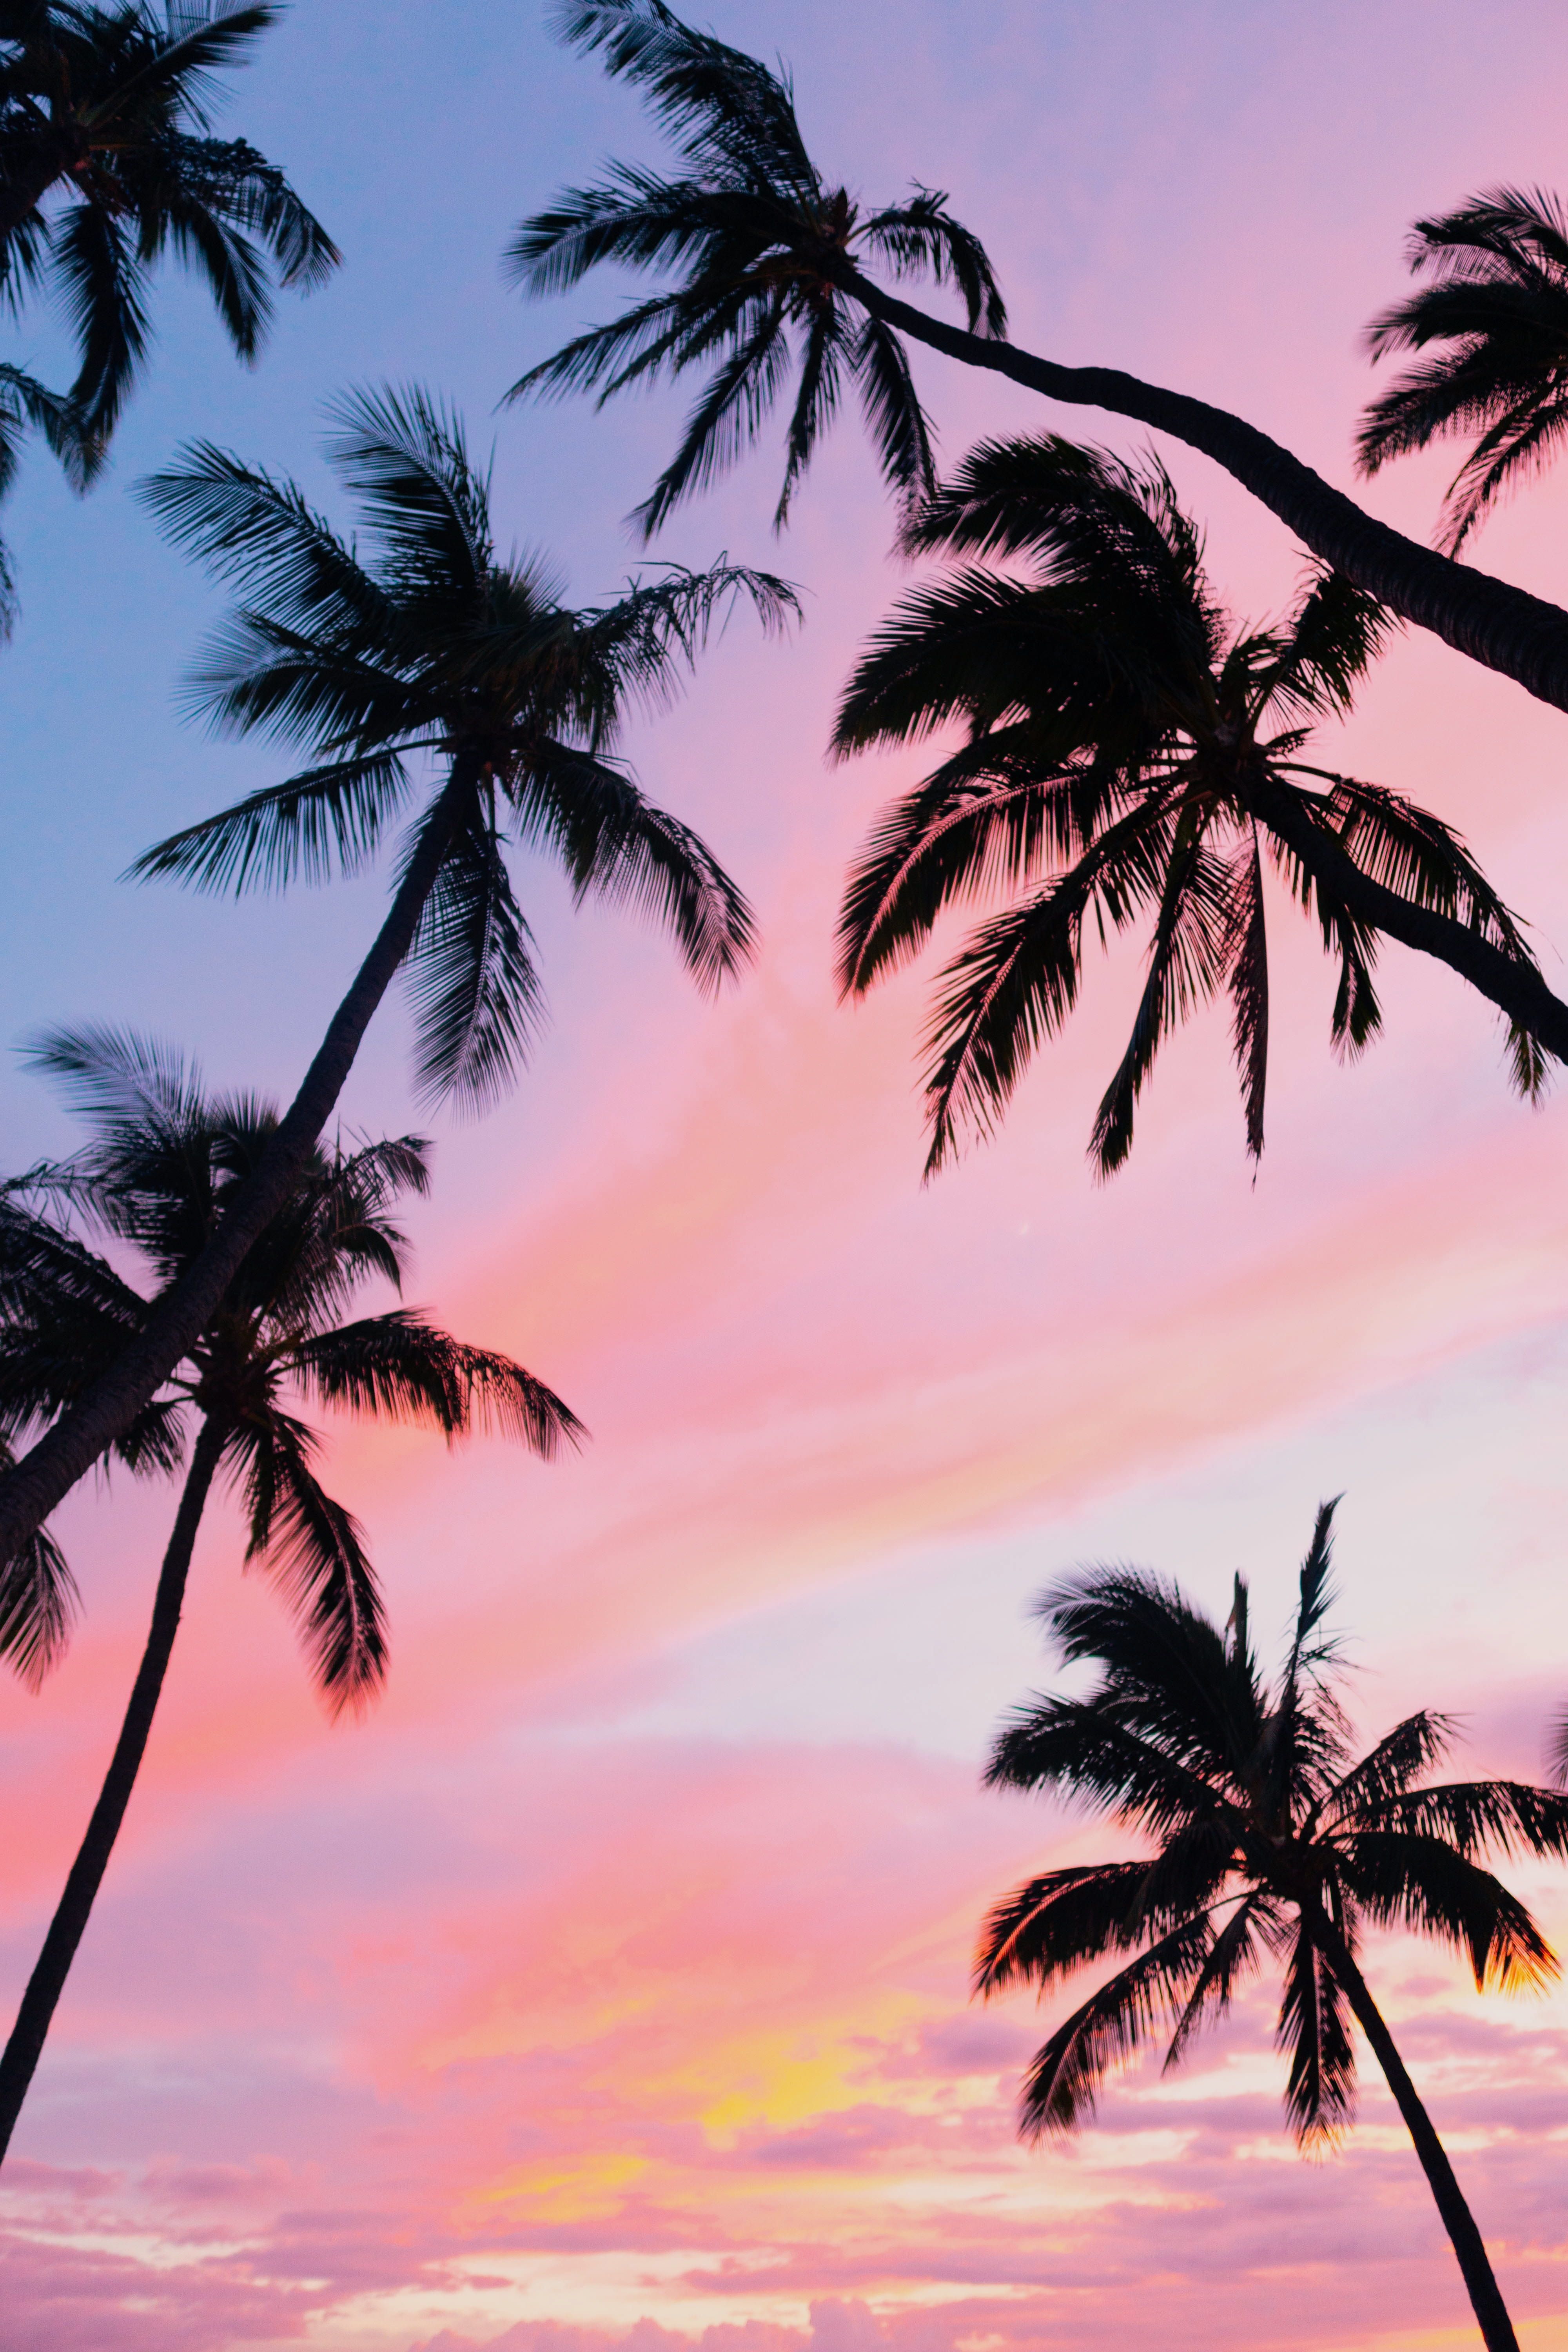 sky #pink #sunset #hawaii #tropical palm tree #tree K #wallpaper #hdwallpaper #desktop. Beach sunset wallpaper, Palm tree art, Sunset iphone wallpaper